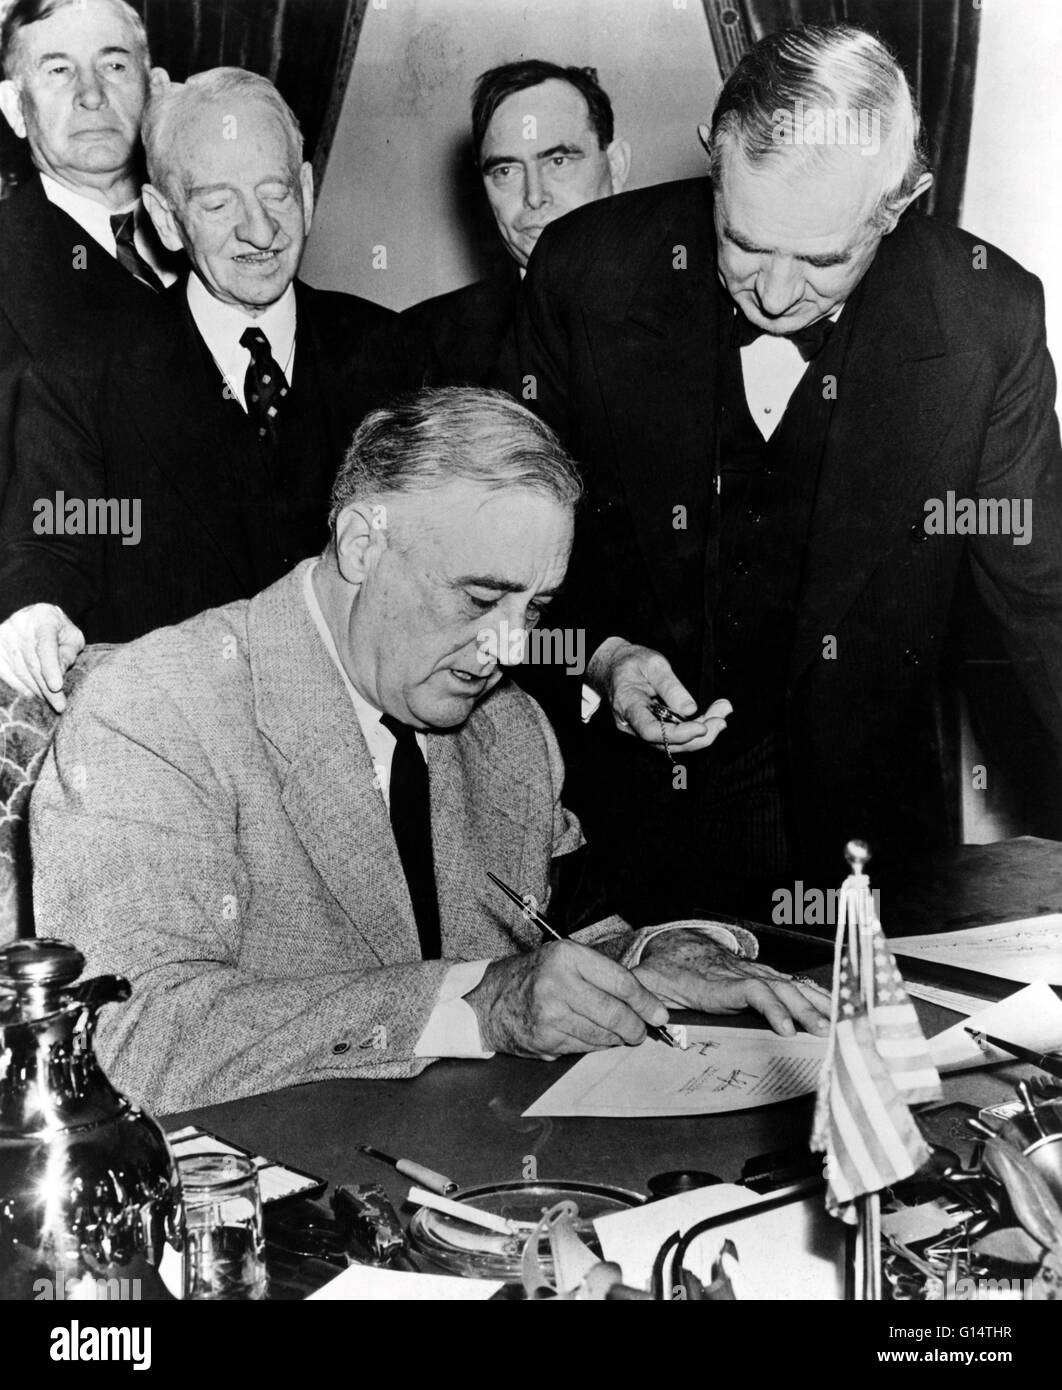 Präsident Roosevelt Unterzeichnung der Erklärung des Krieges gegen Japan im Jahre 1941. Franklin Delano Roosevelt (30. Januar 1882 - 12. April 1945) war der 32. Präsident der Vereinigten Staaten (1933-1945) und eine zentrale Figur im Weltgeschehen während der Mitte des 20. Jahrhunderts Stockfoto